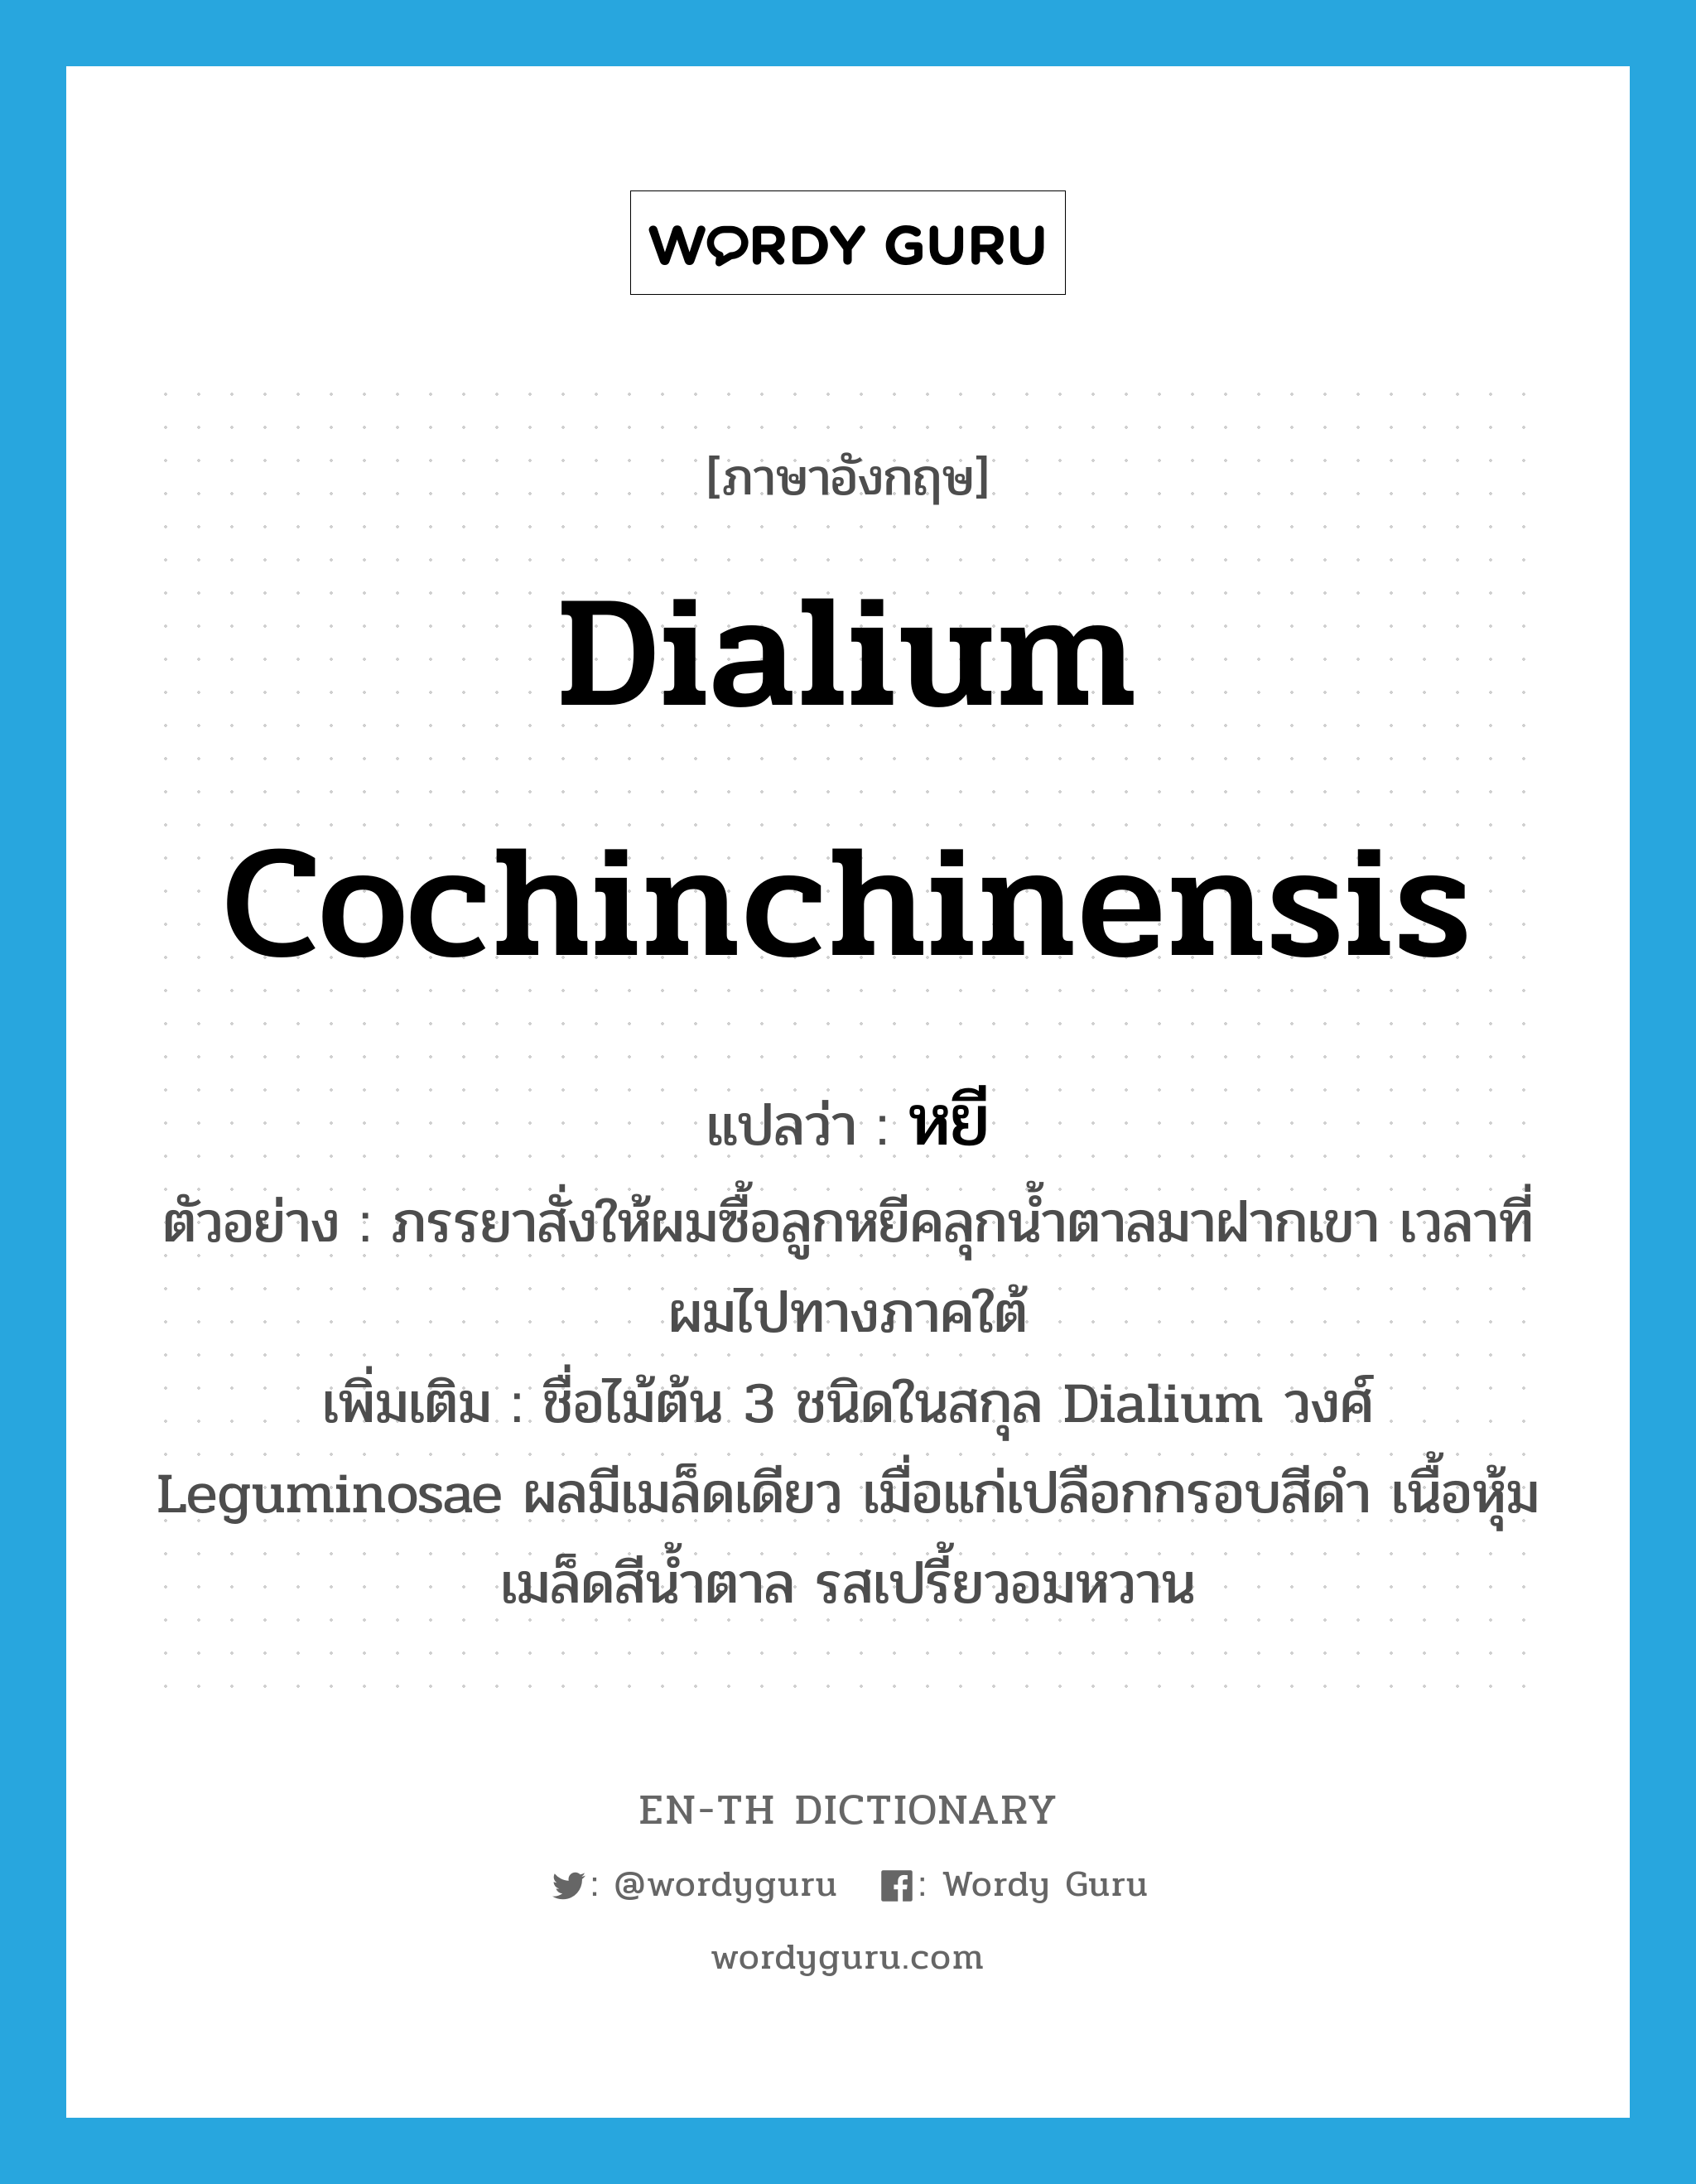 หยี ภาษาอังกฤษ?, คำศัพท์ภาษาอังกฤษ หยี แปลว่า Dialium cochinchinensis ประเภท N ตัวอย่าง ภรรยาสั่งให้ผมซื้อลูกหยีคลุกน้ำตาลมาฝากเขา เวลาที่ผมไปทางภาคใต้ เพิ่มเติม ชื่อไม้ต้น 3 ชนิดในสกุล Dialium วงศ์ Leguminosae ผลมีเมล็ดเดียว เมื่อแก่เปลือกกรอบสีดำ เนื้อหุ้มเมล็ดสีน้ำตาล รสเปรี้ยวอมหวาน หมวด N